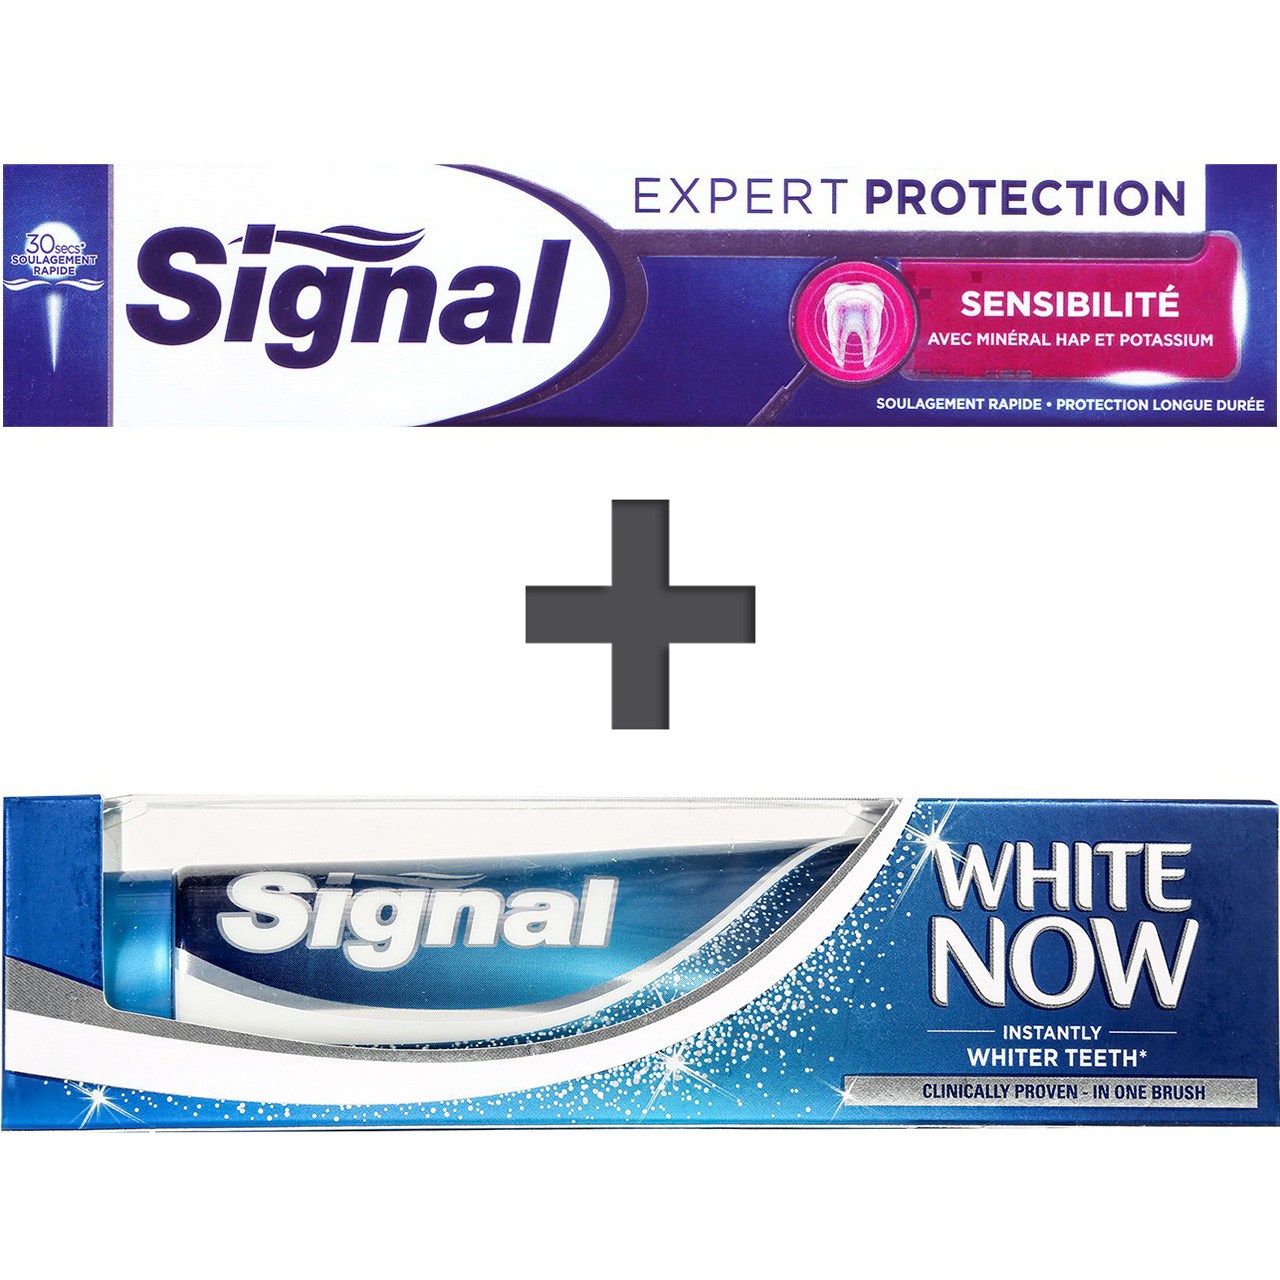 پک خمیردندان سیگنال مدل Expert Protection sensitivity و White Now Original حجم 75 میلی لیتر- بسته 2 عددی